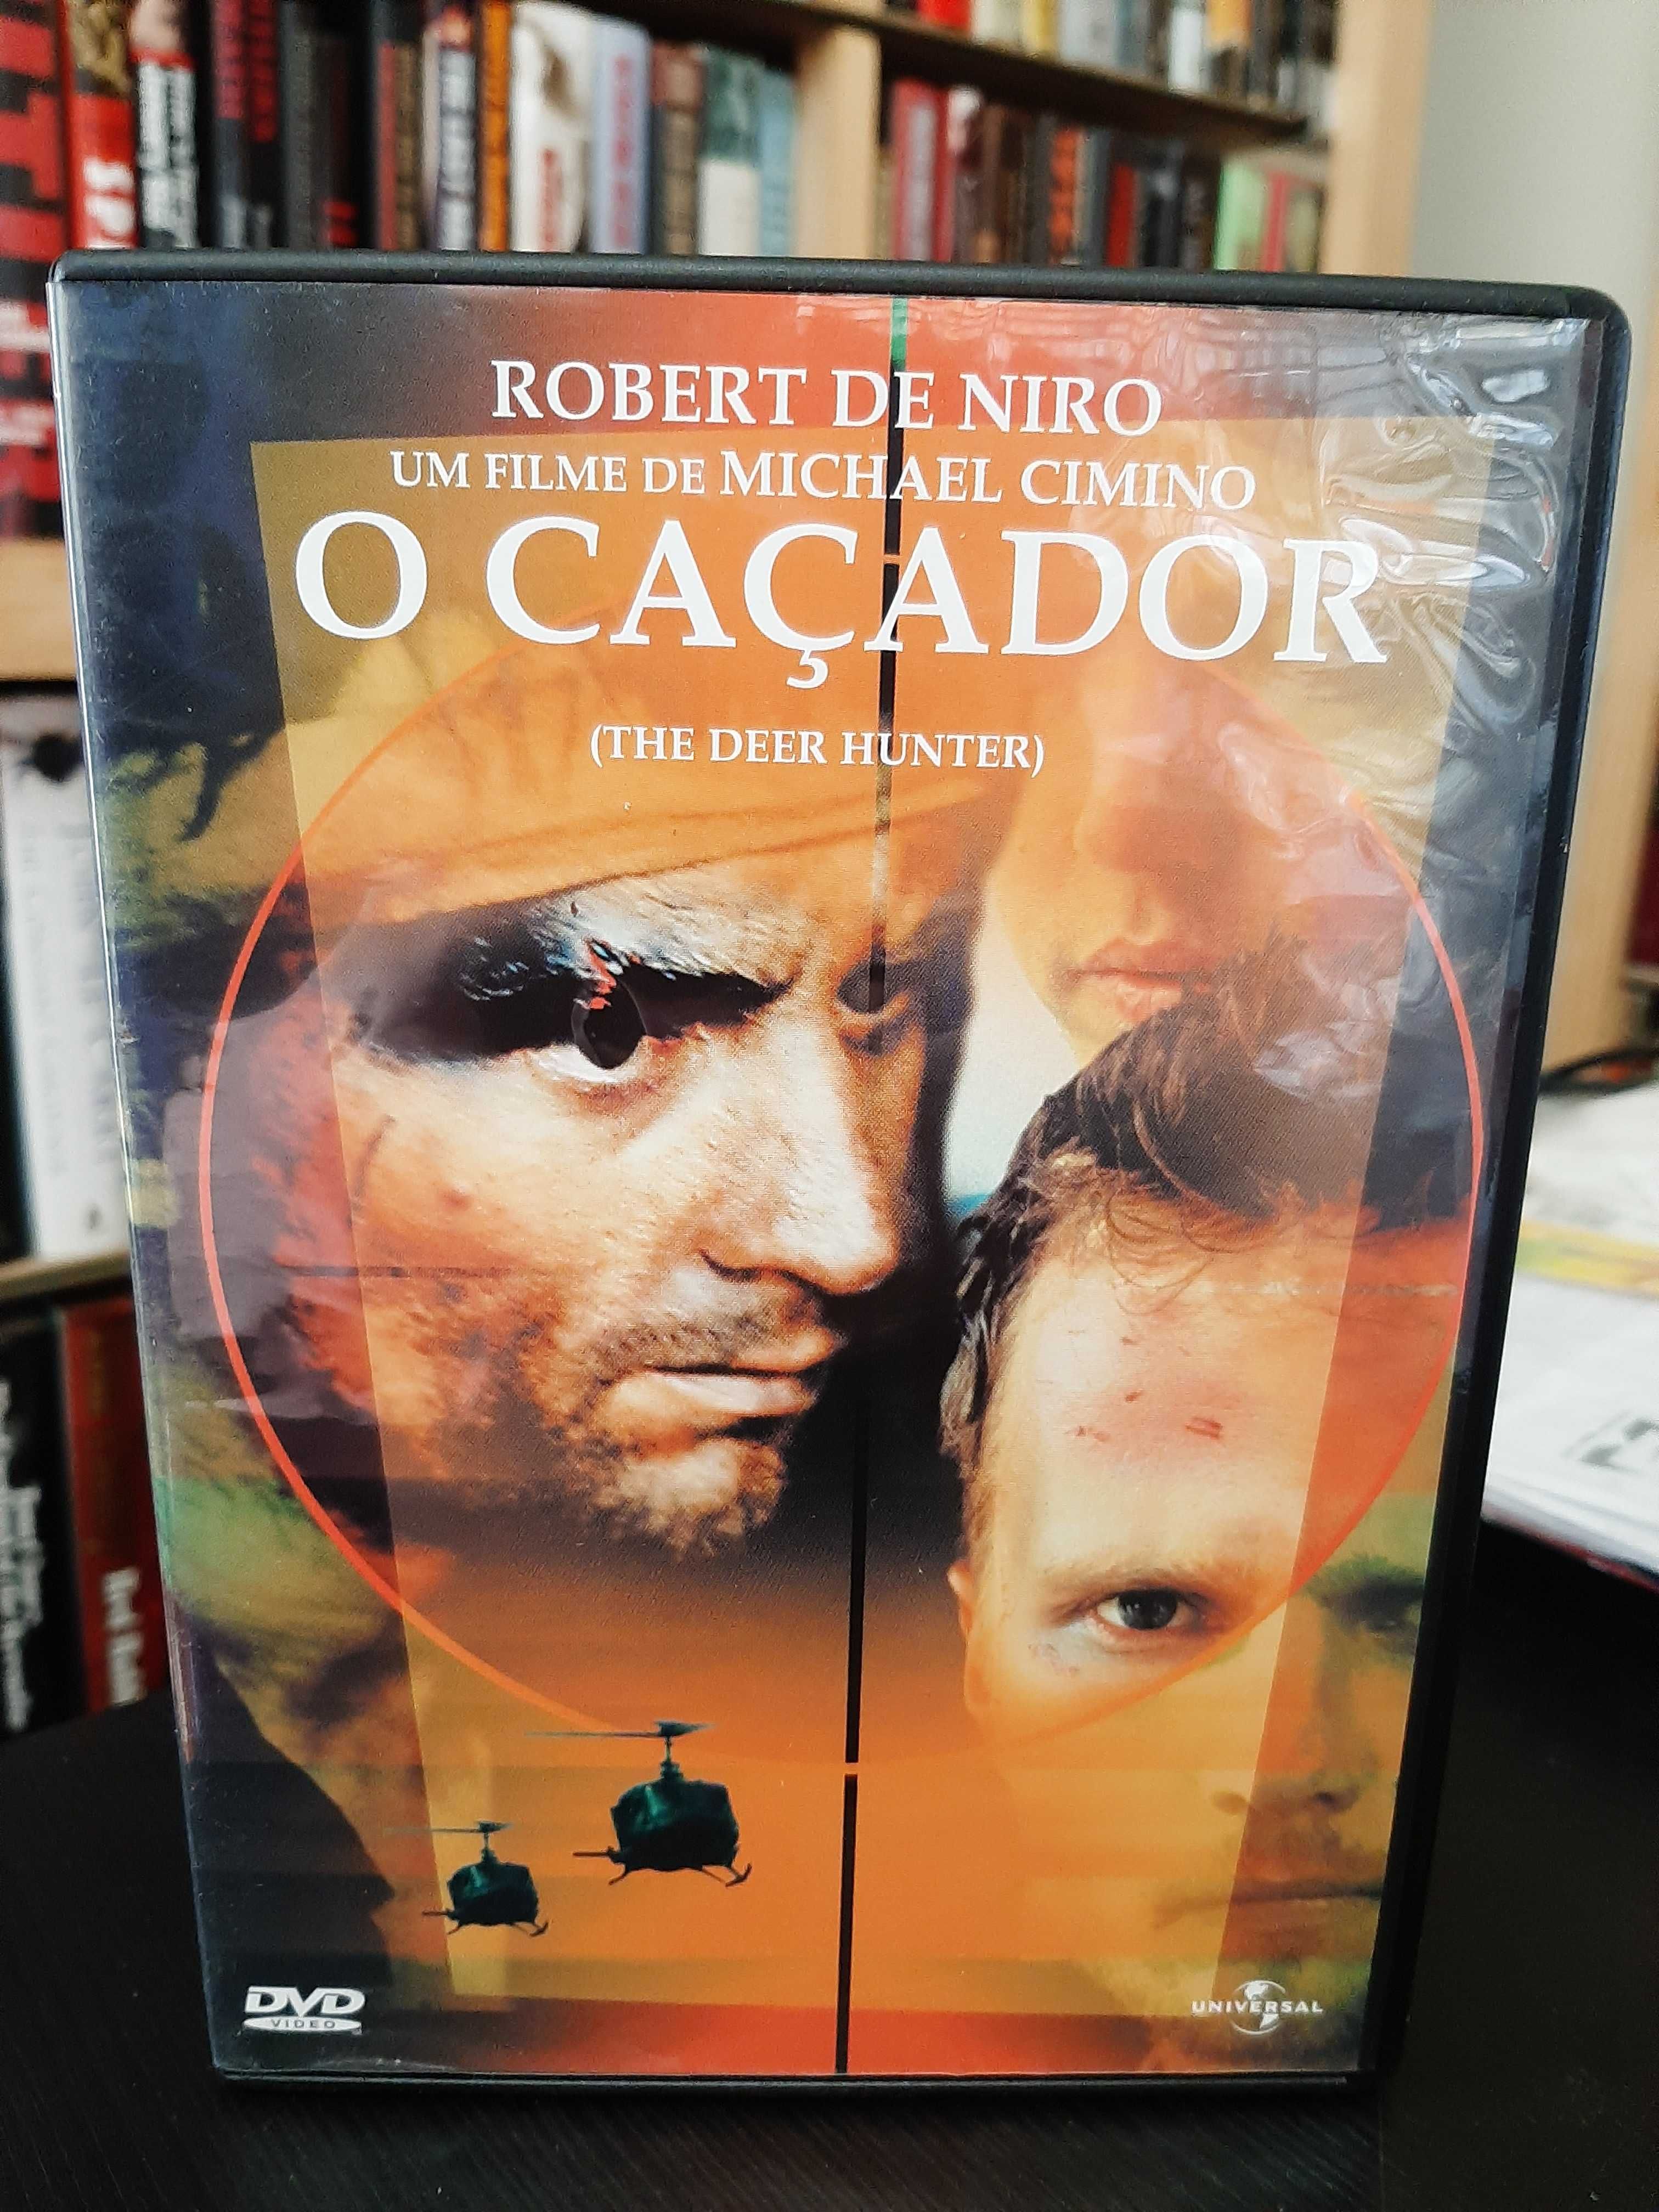 Michael Cimino - O Caçador - The Deer Hunter - De Niro - DVD